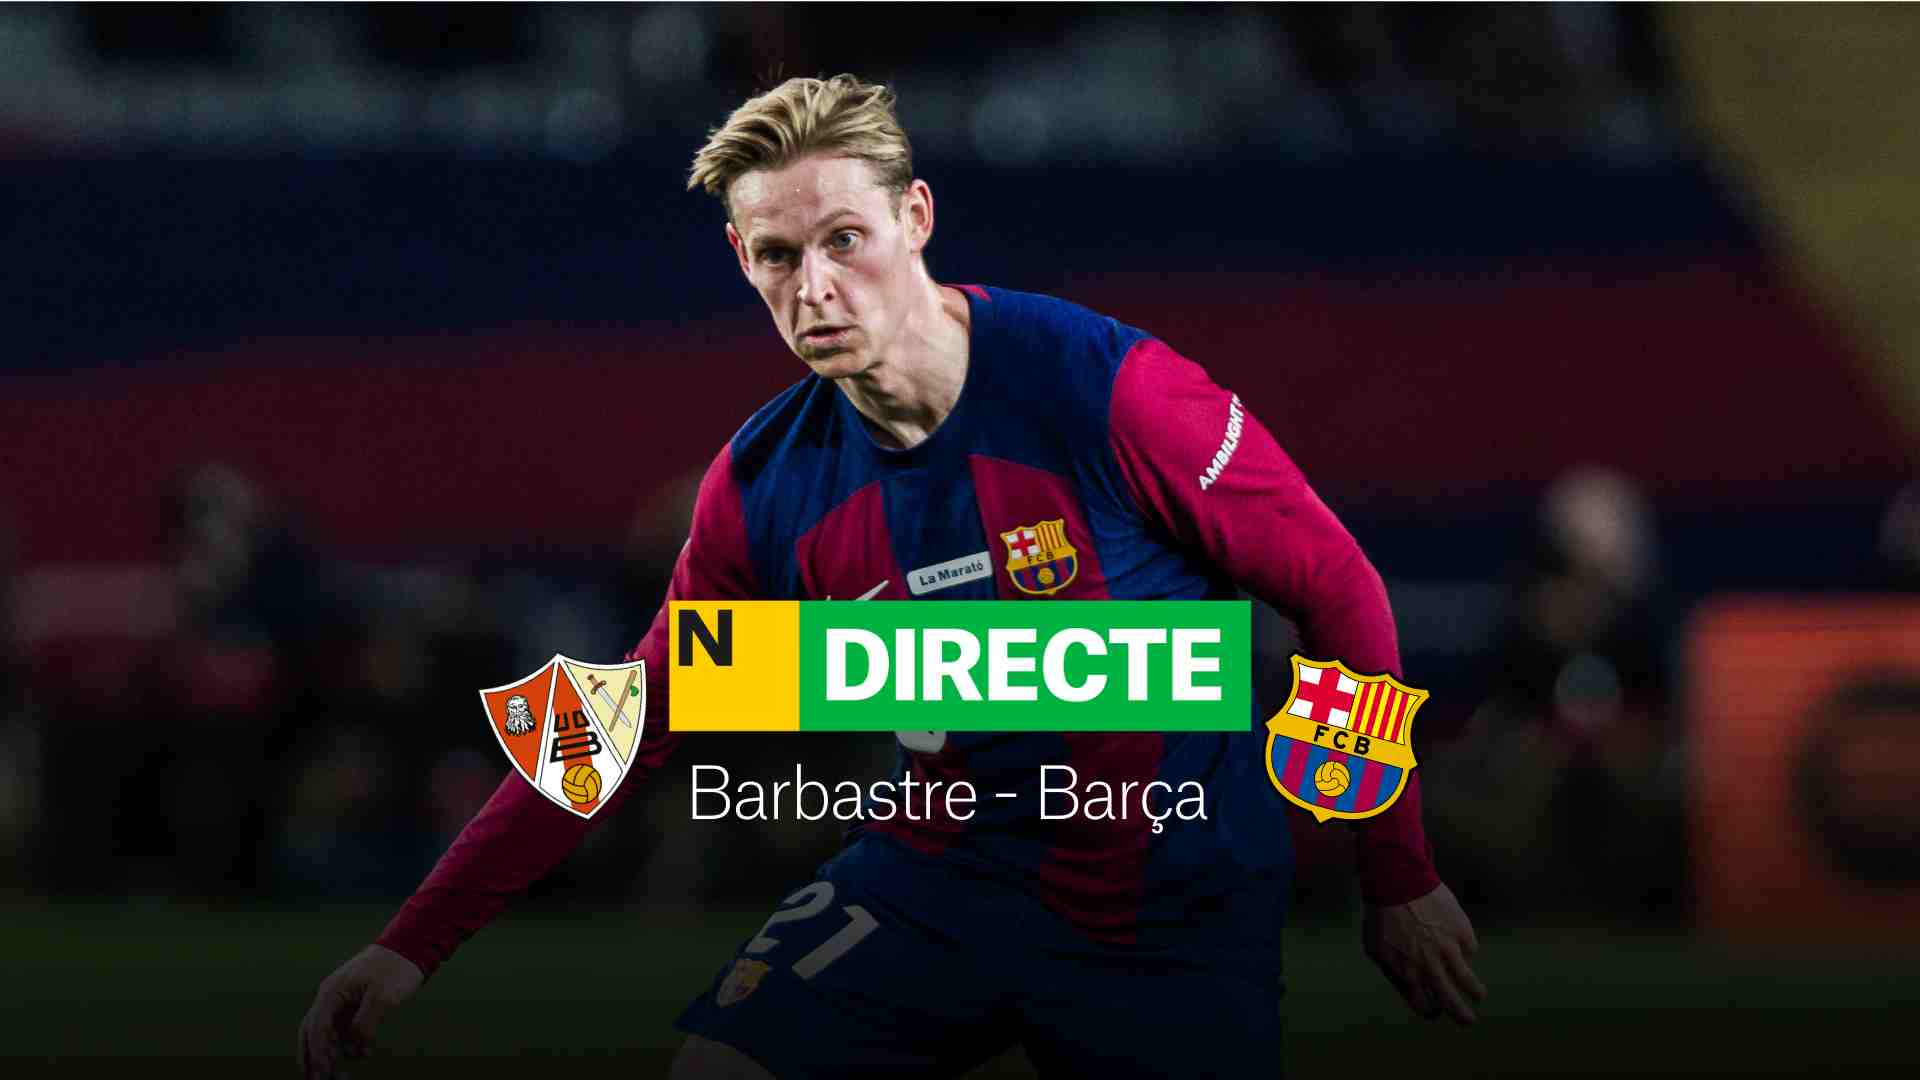 Barbastro - Barcelona de Copa del Rey hoy, DIRECTO | Resultado, resumen y goles